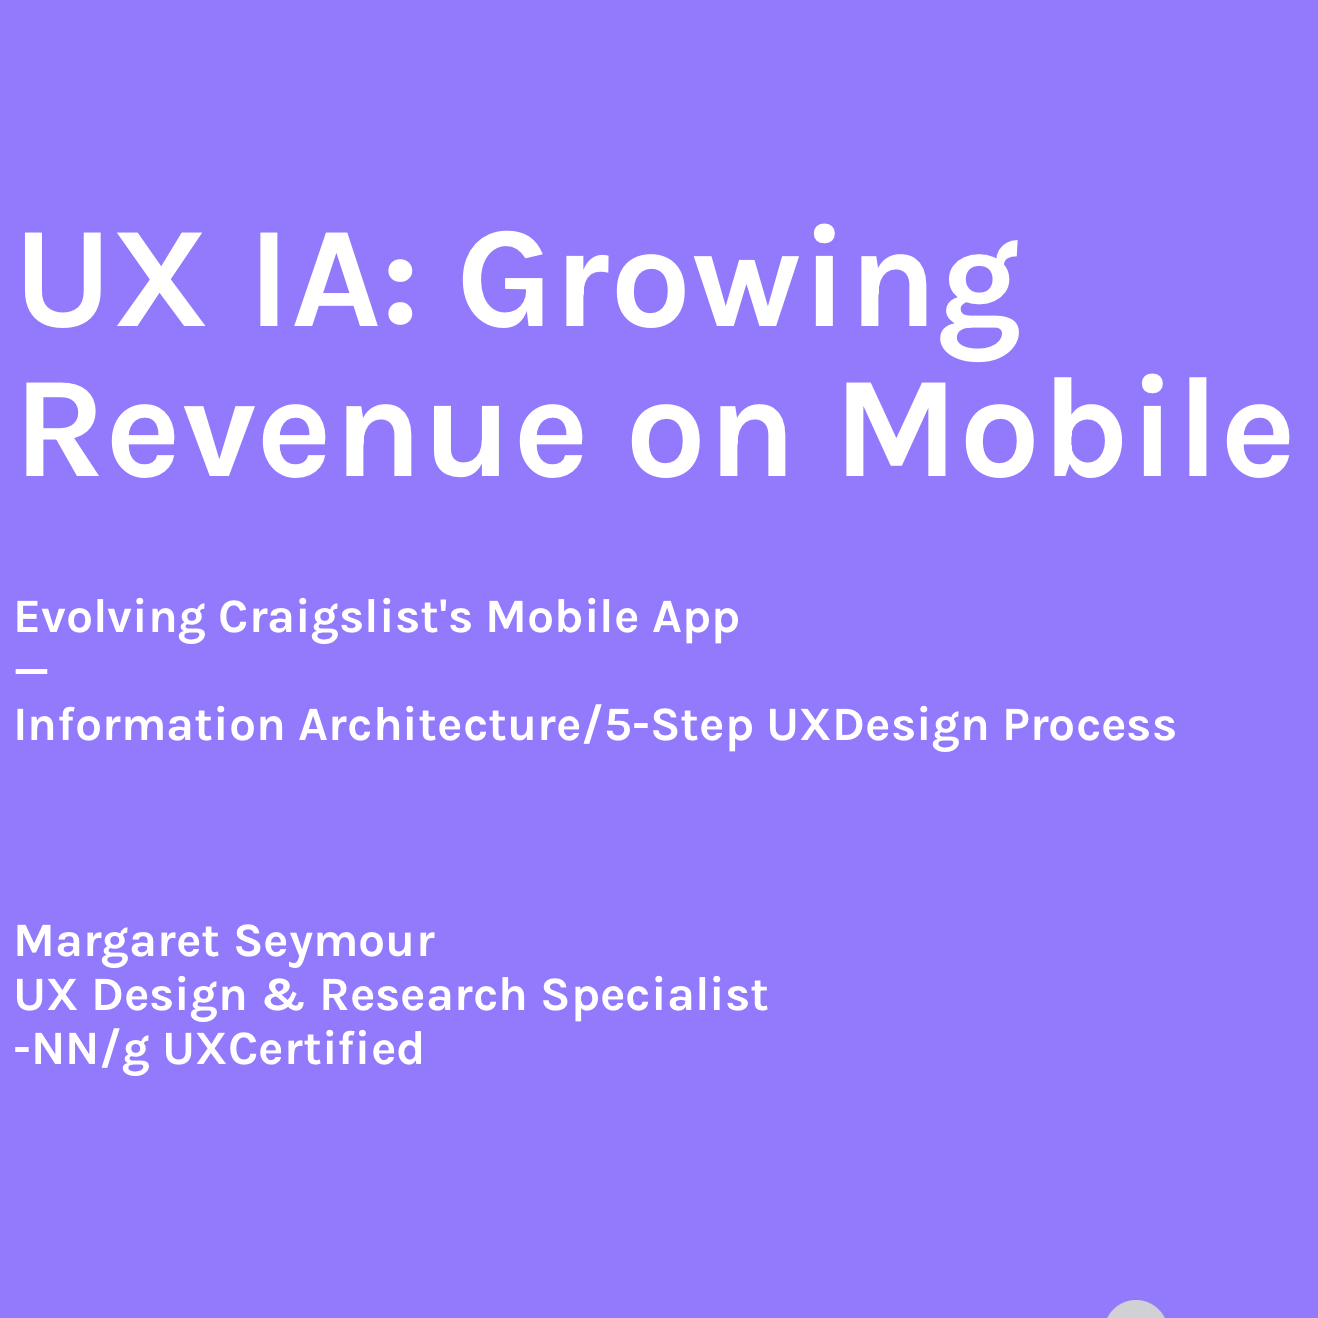 5-Step IA Process to Grow Revenue on Mobile